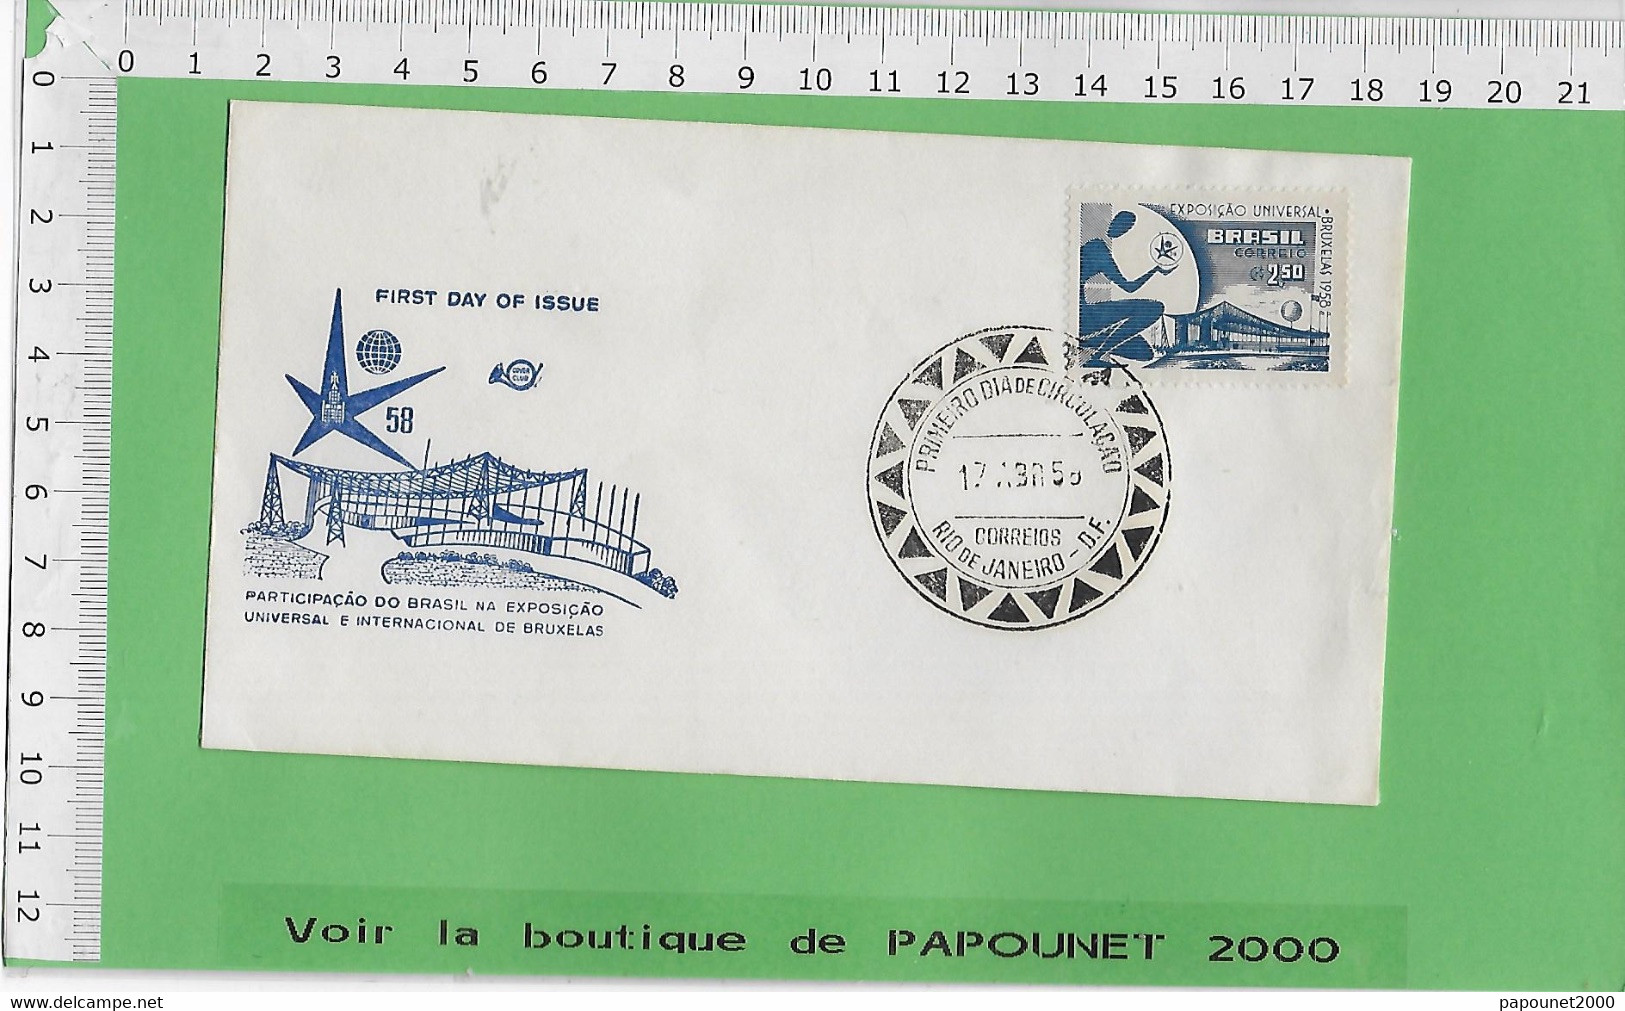 02581 - E BE04 1000-EXPO 58 : Timbre*Enveloppe /  PAVILLON DU BRESIL - 1958 – Brussel (België)